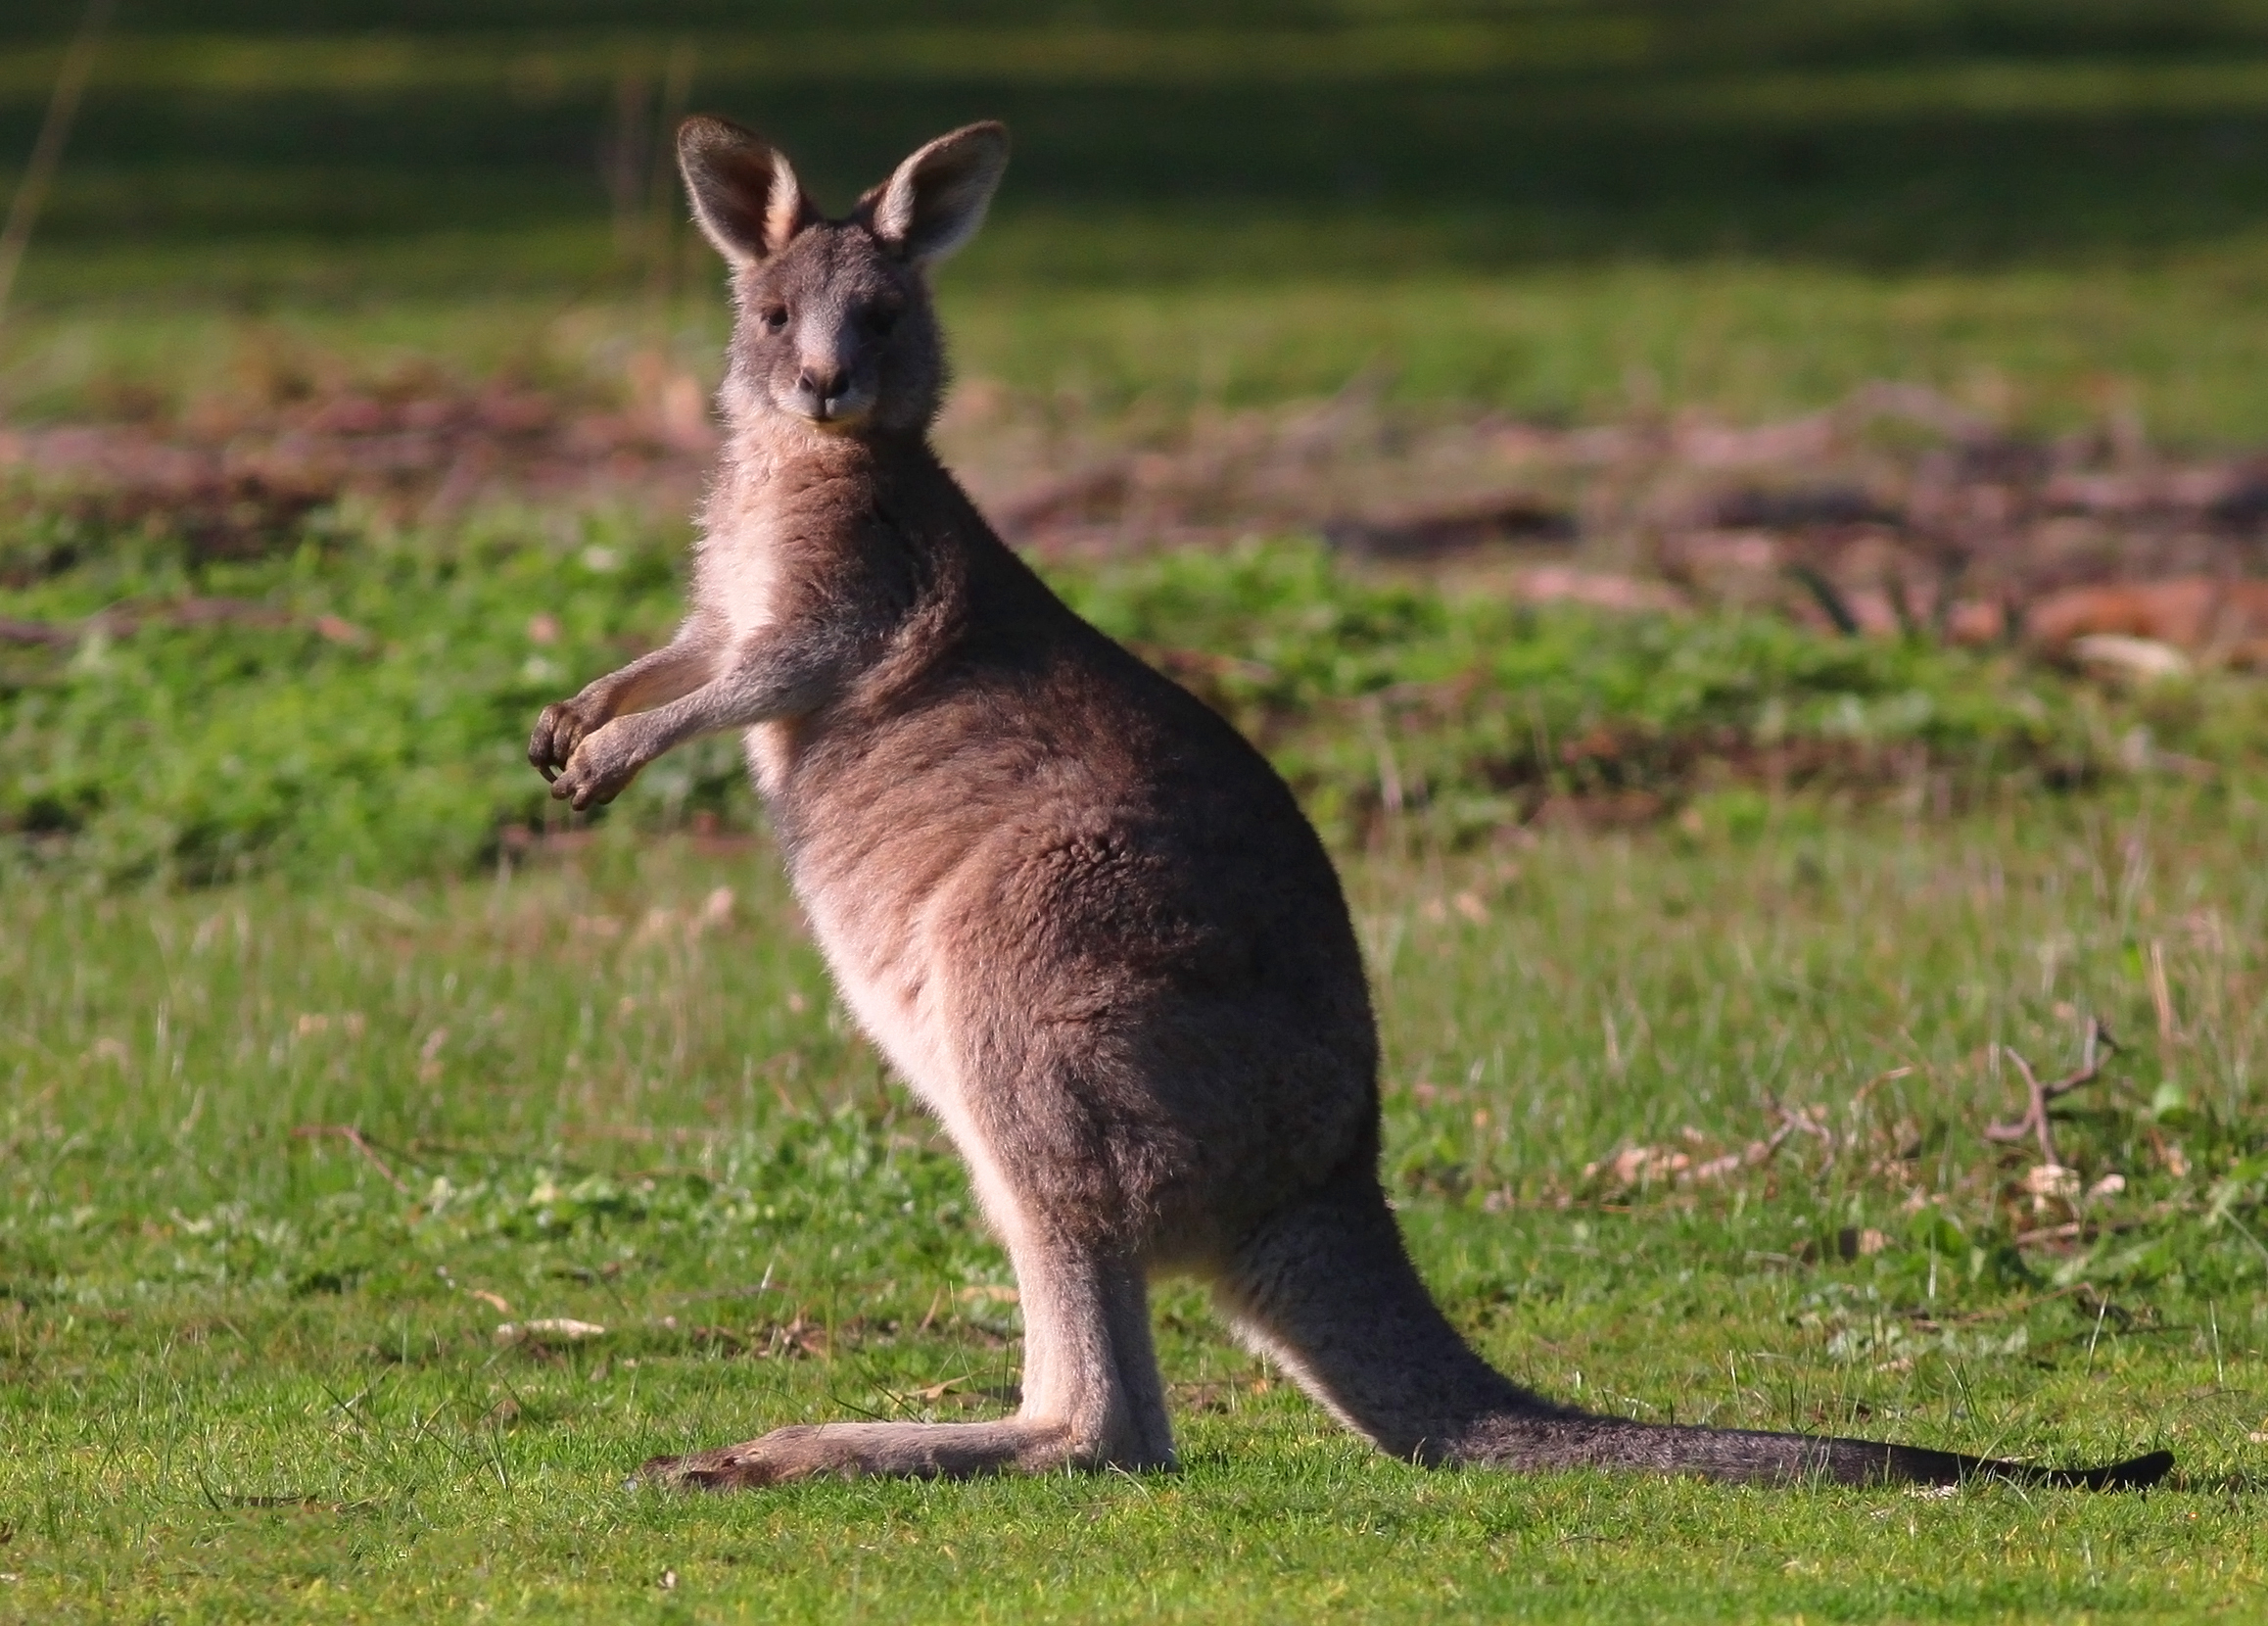 Животные австралии для детей фото с названиями